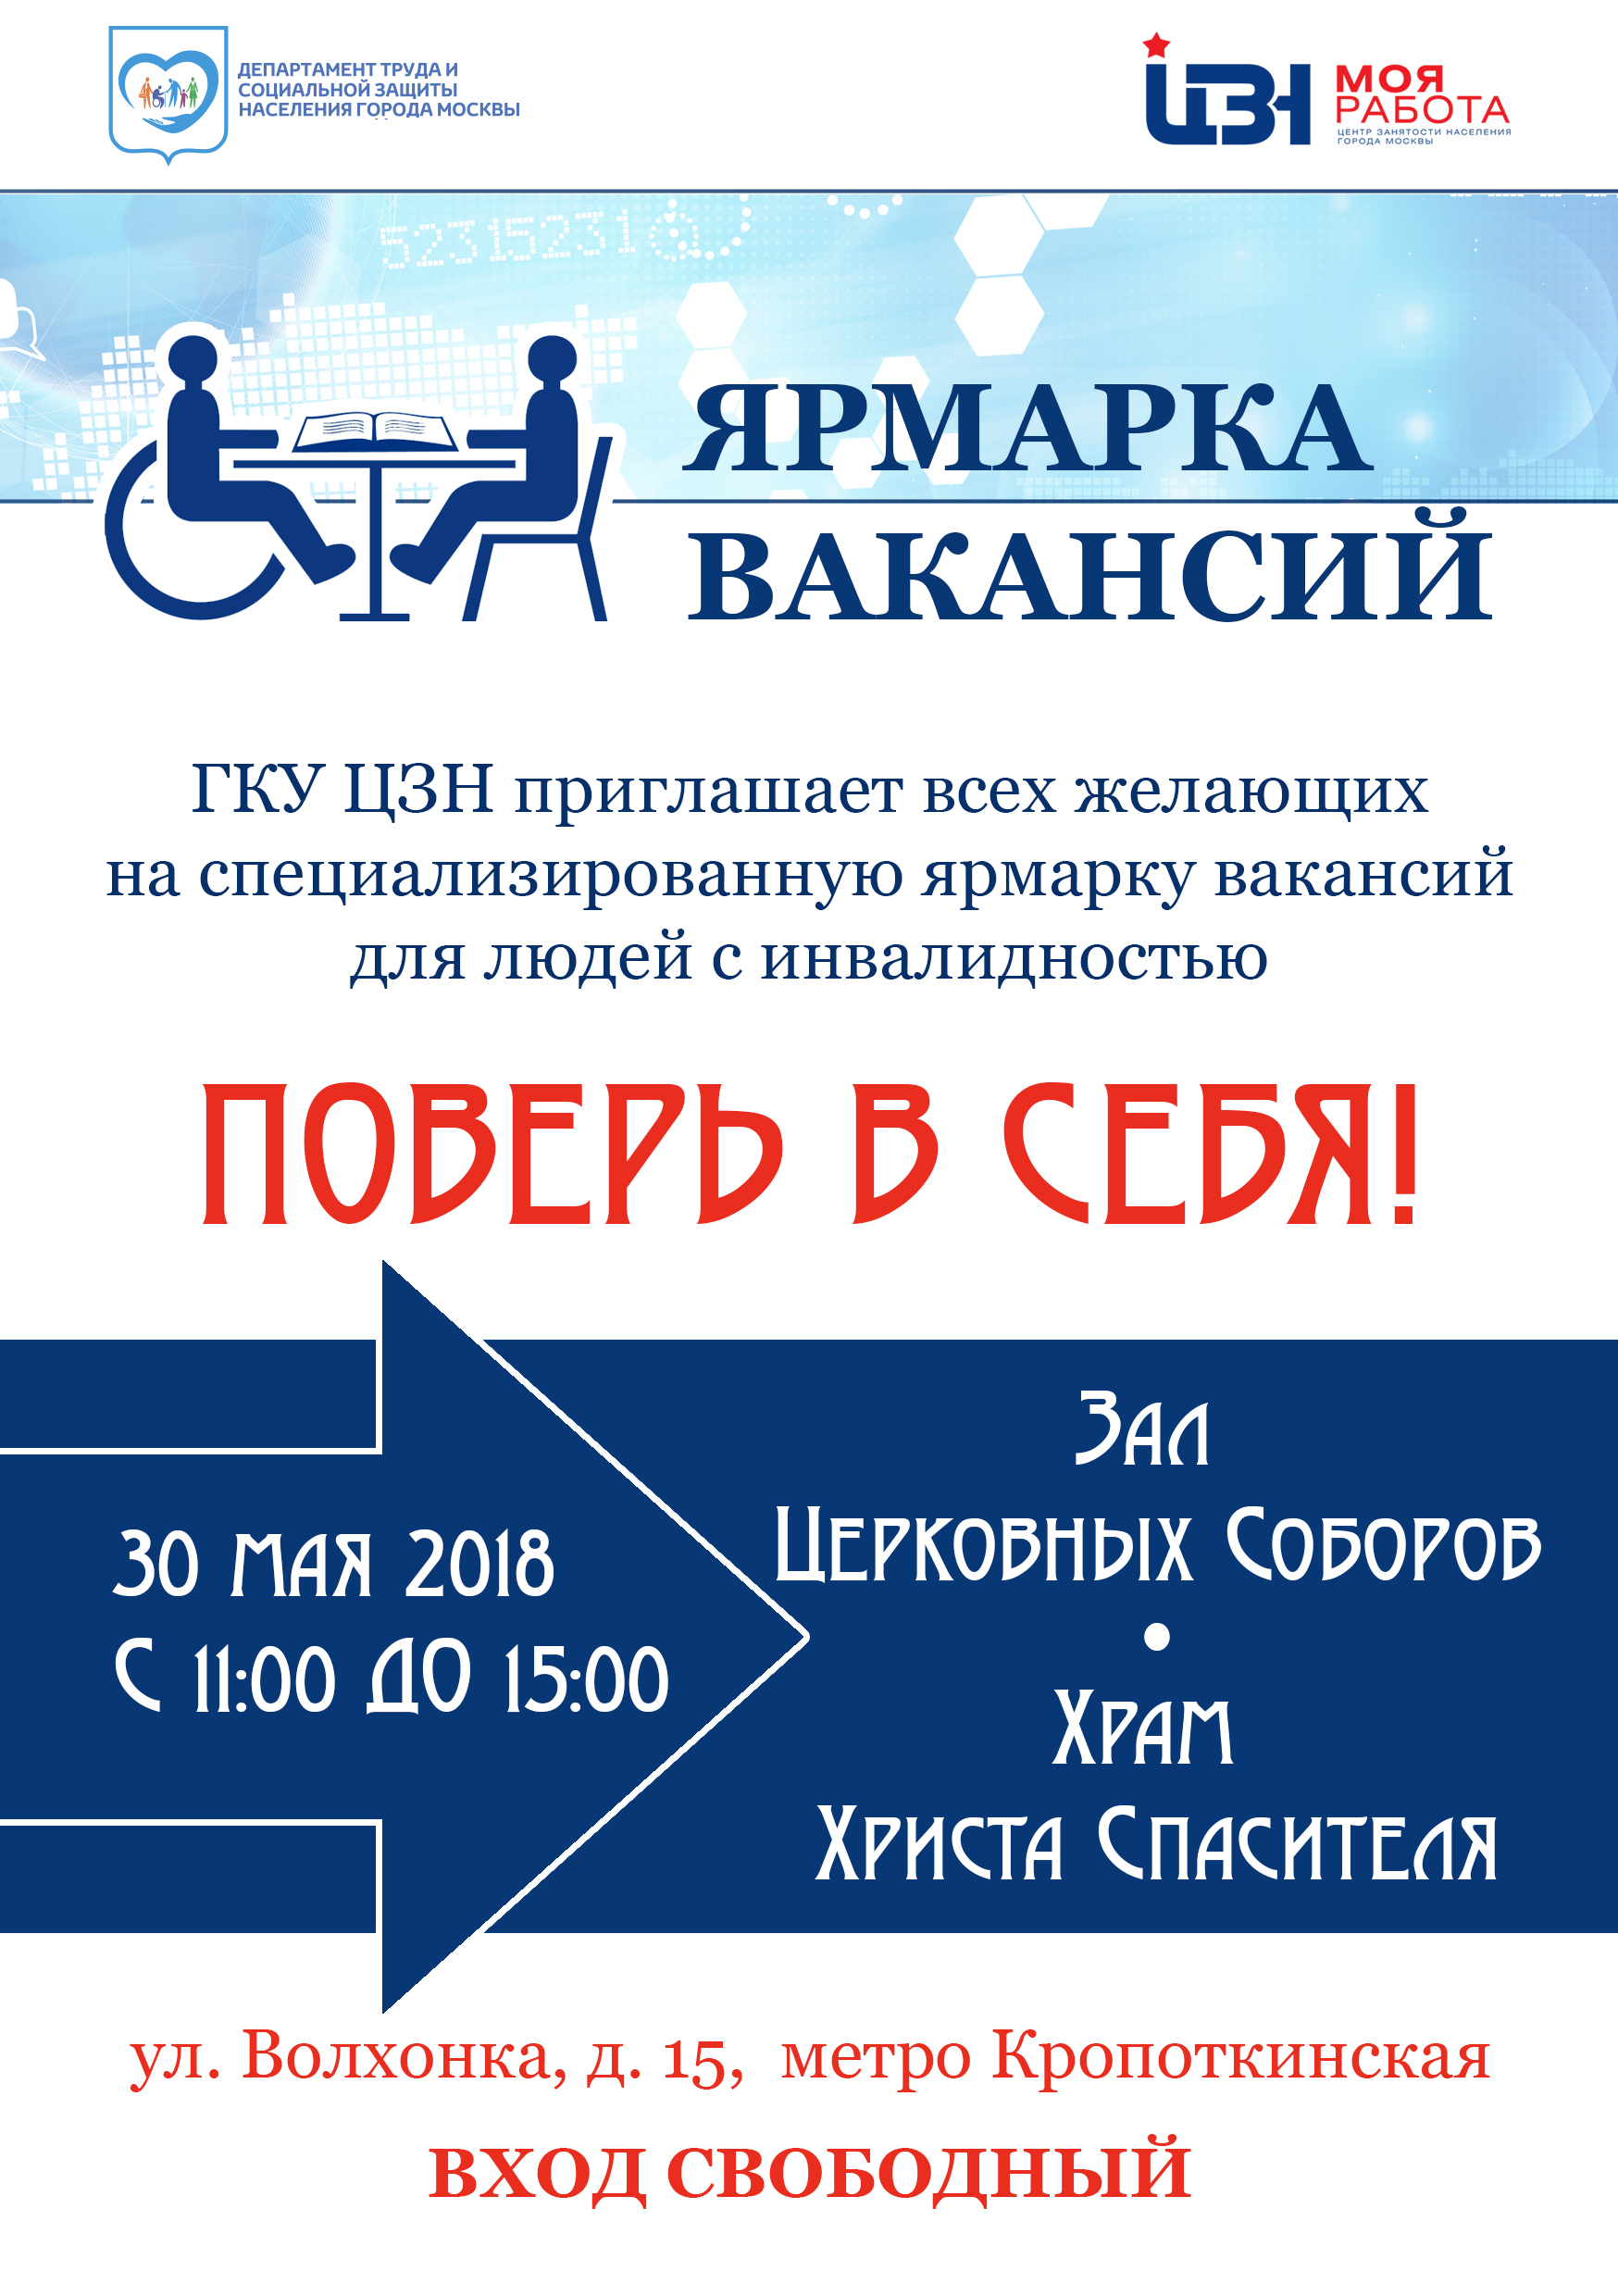 Специализированная ярмарка вакансий для инвалидов 30 мая 2018 года с 11:00 до 15:00